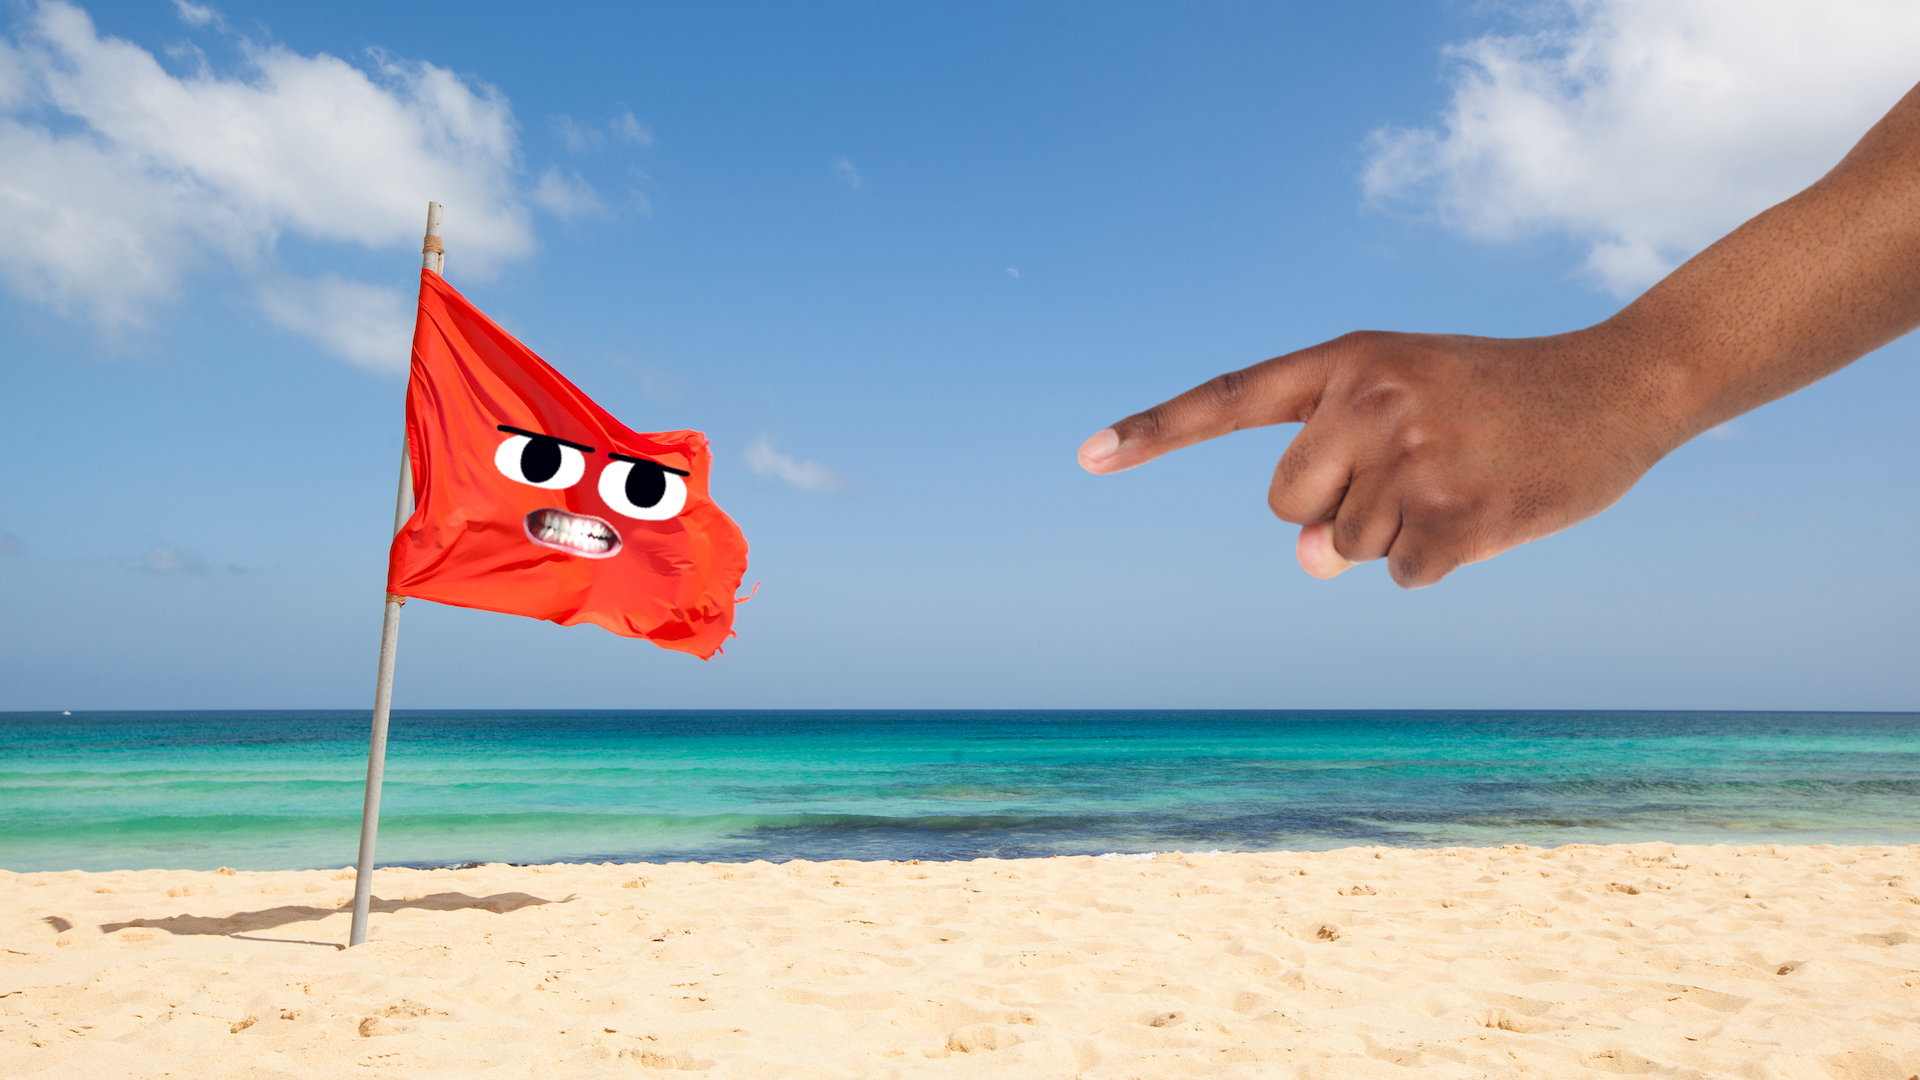 A red flag on a sandy beach